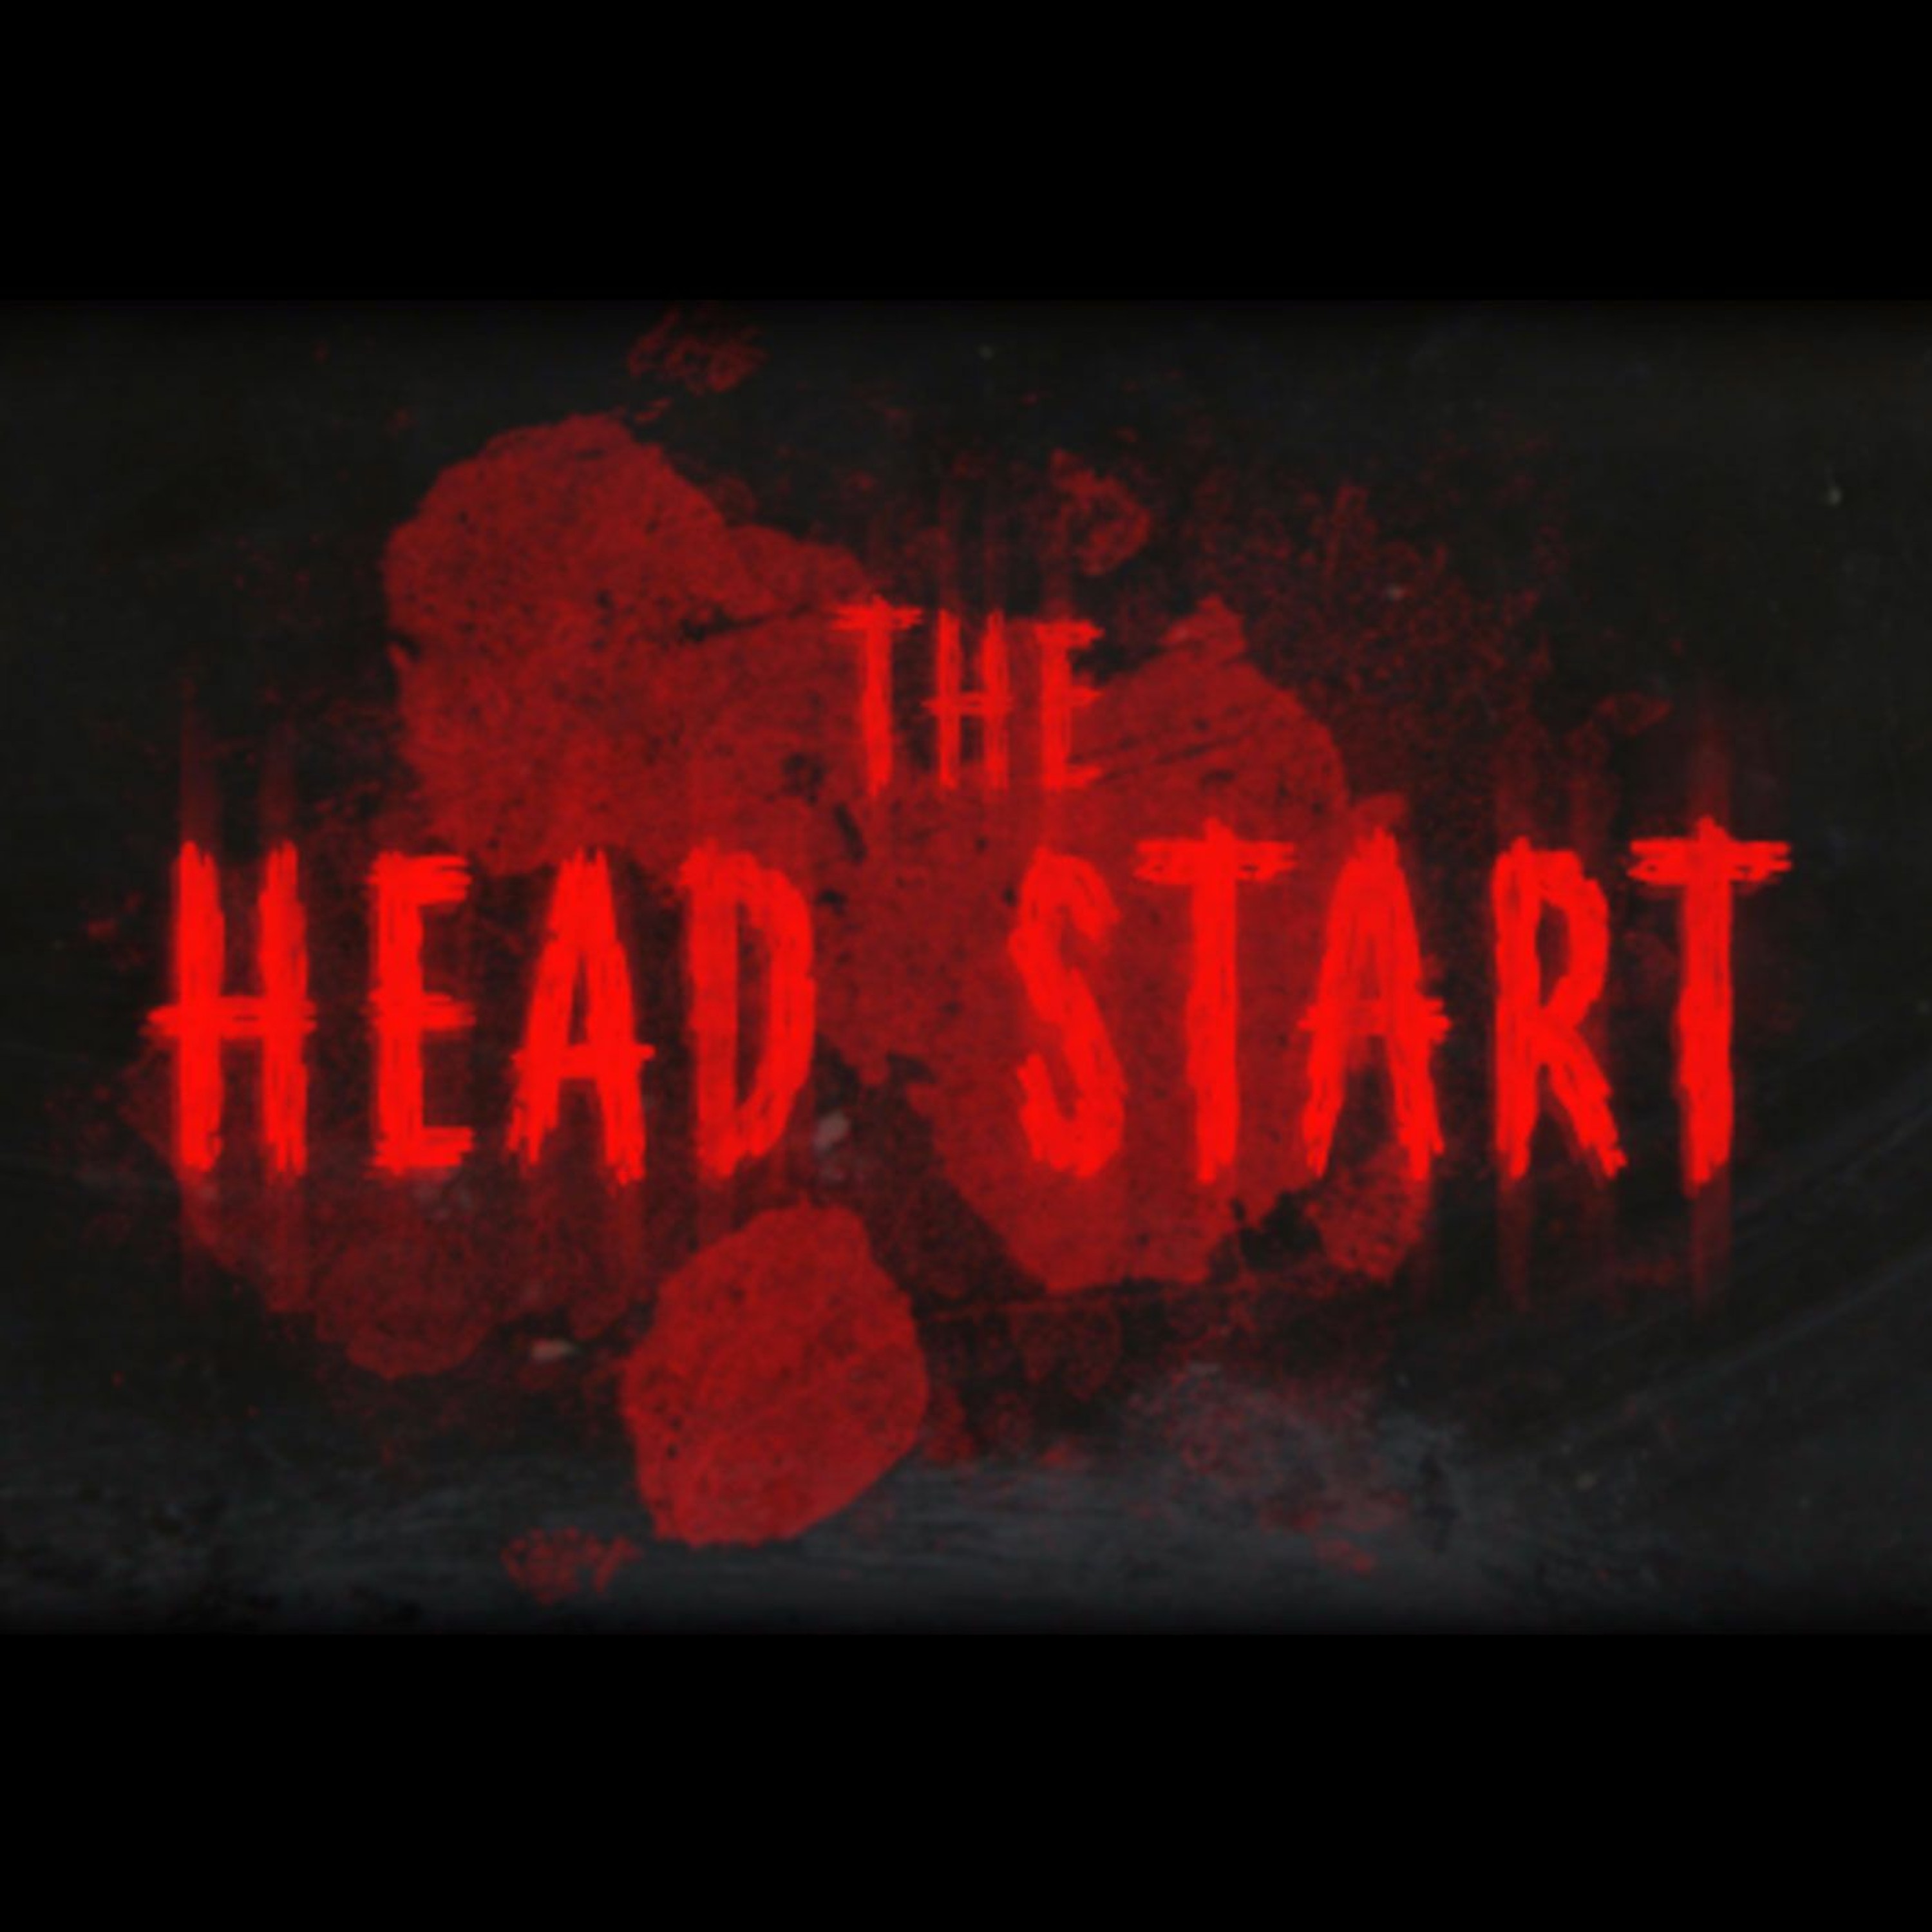 The Head Start